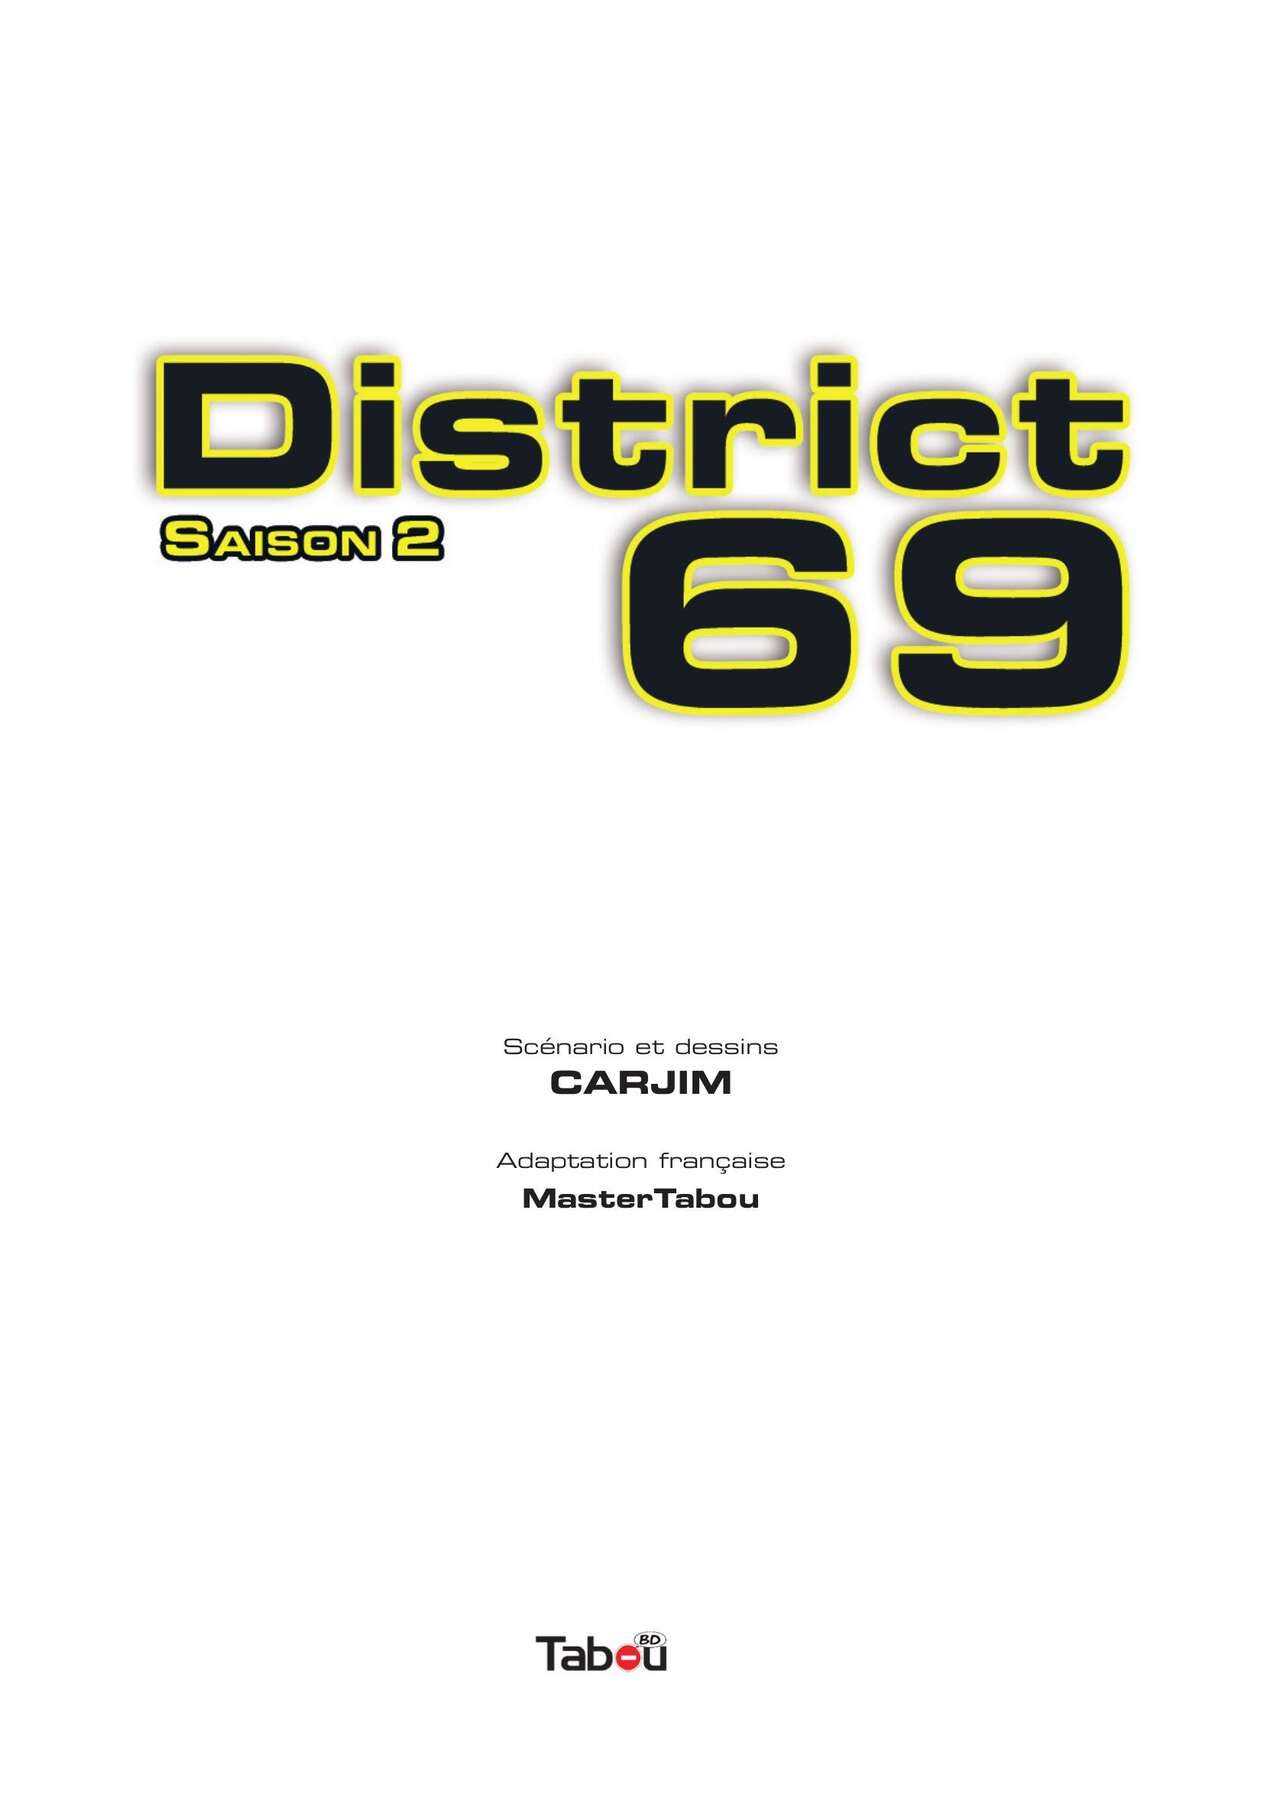 District 69 - Saison 2 numero d'image 2